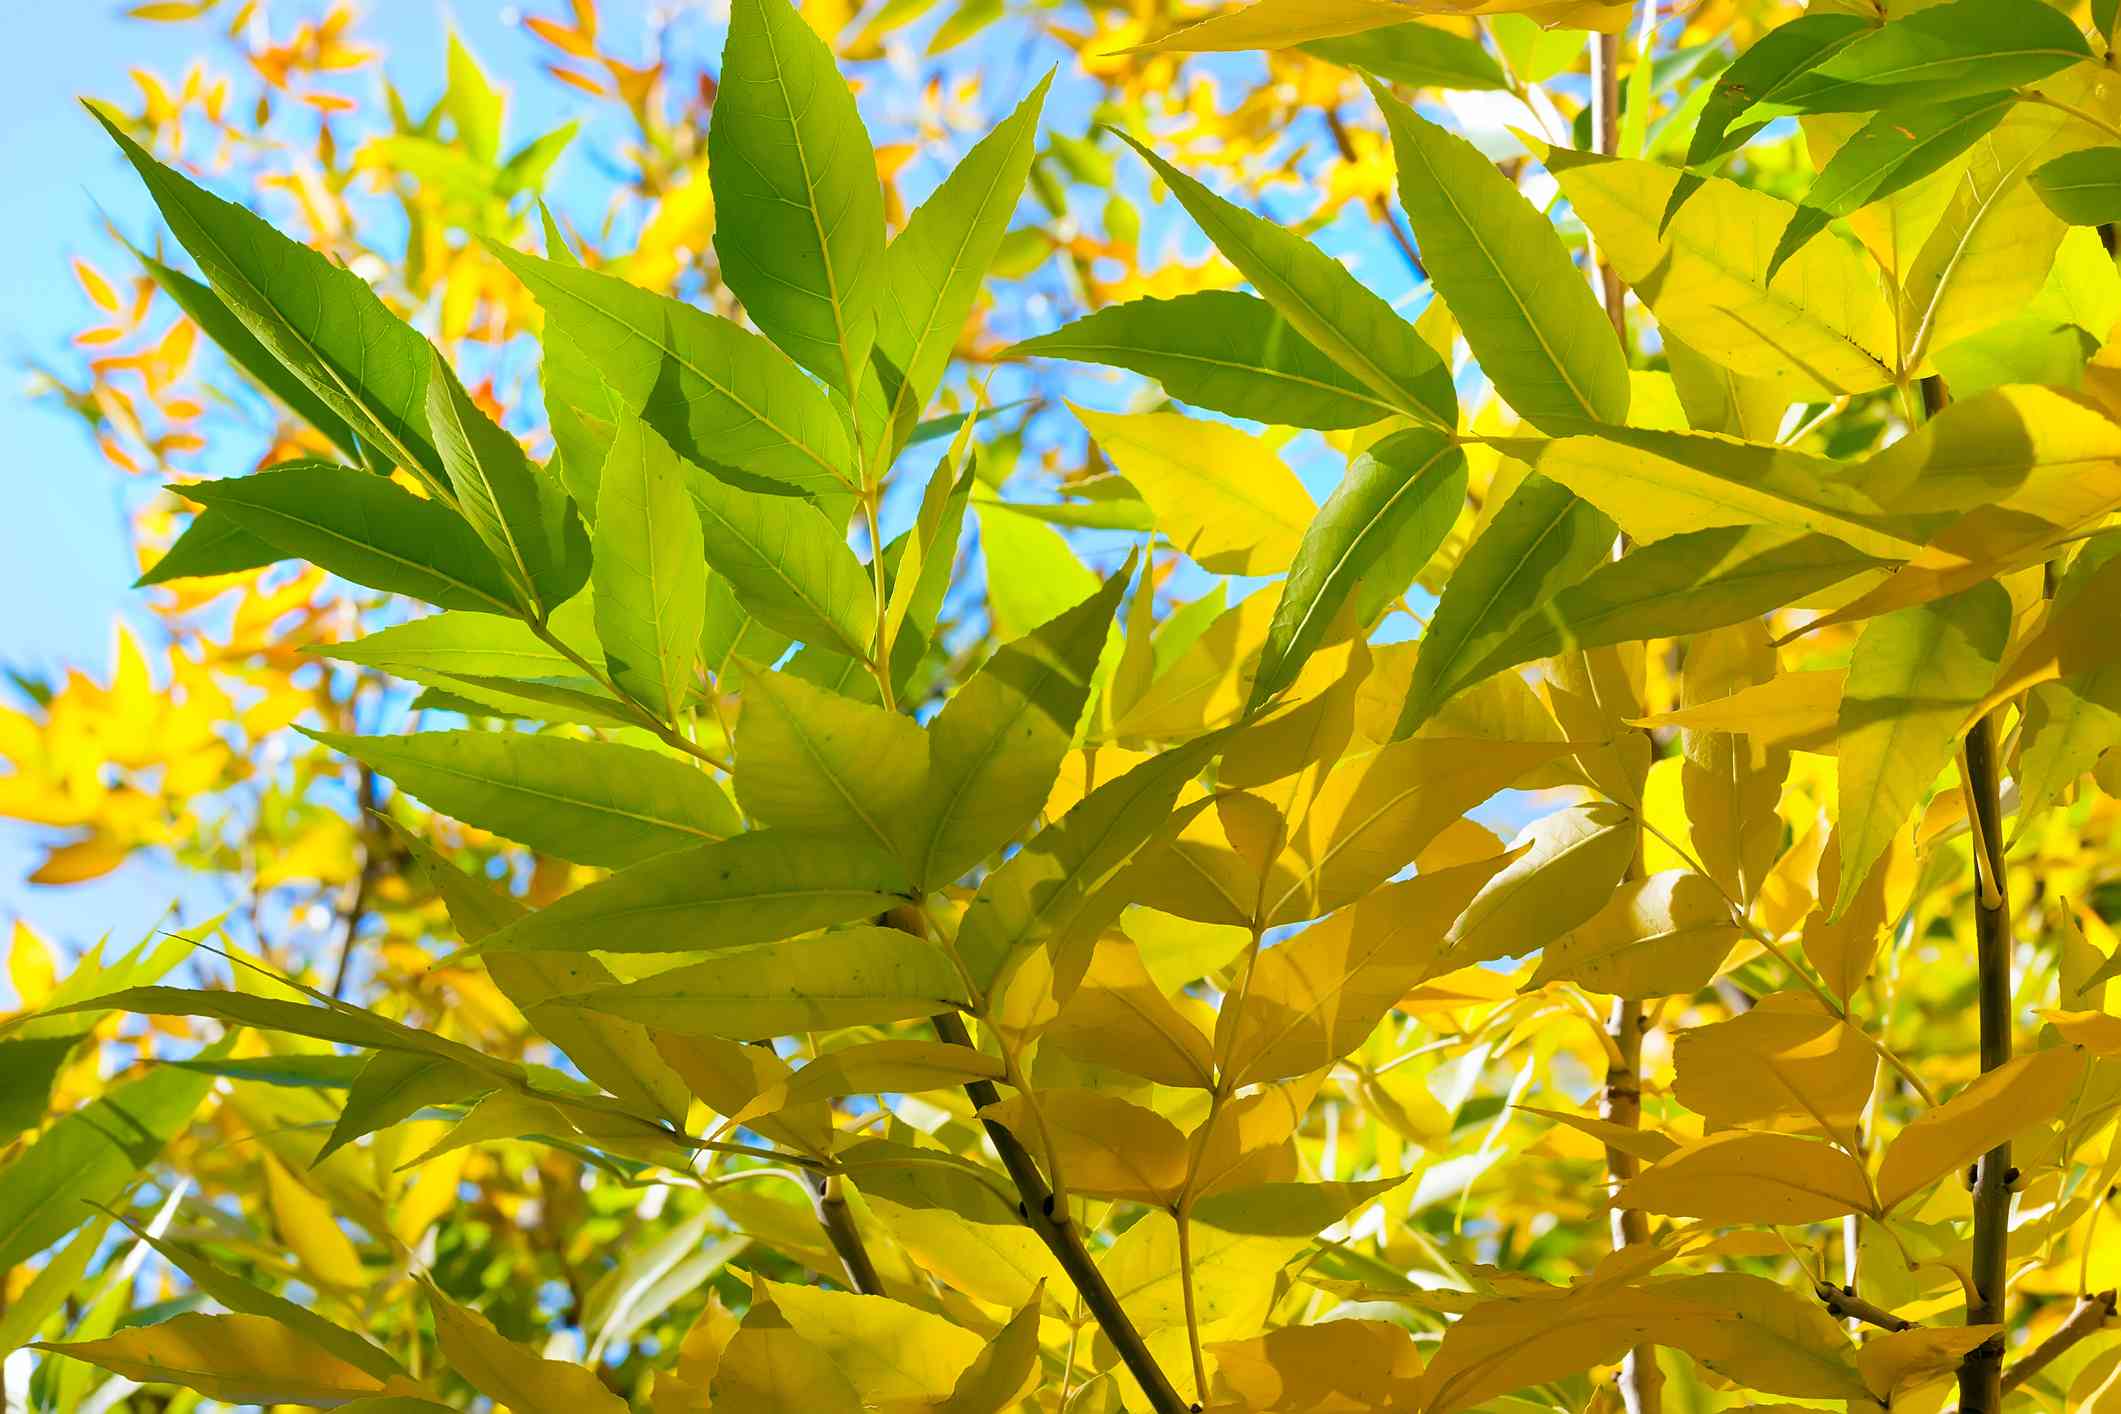 Detalle de las hojas de boj que amarillean